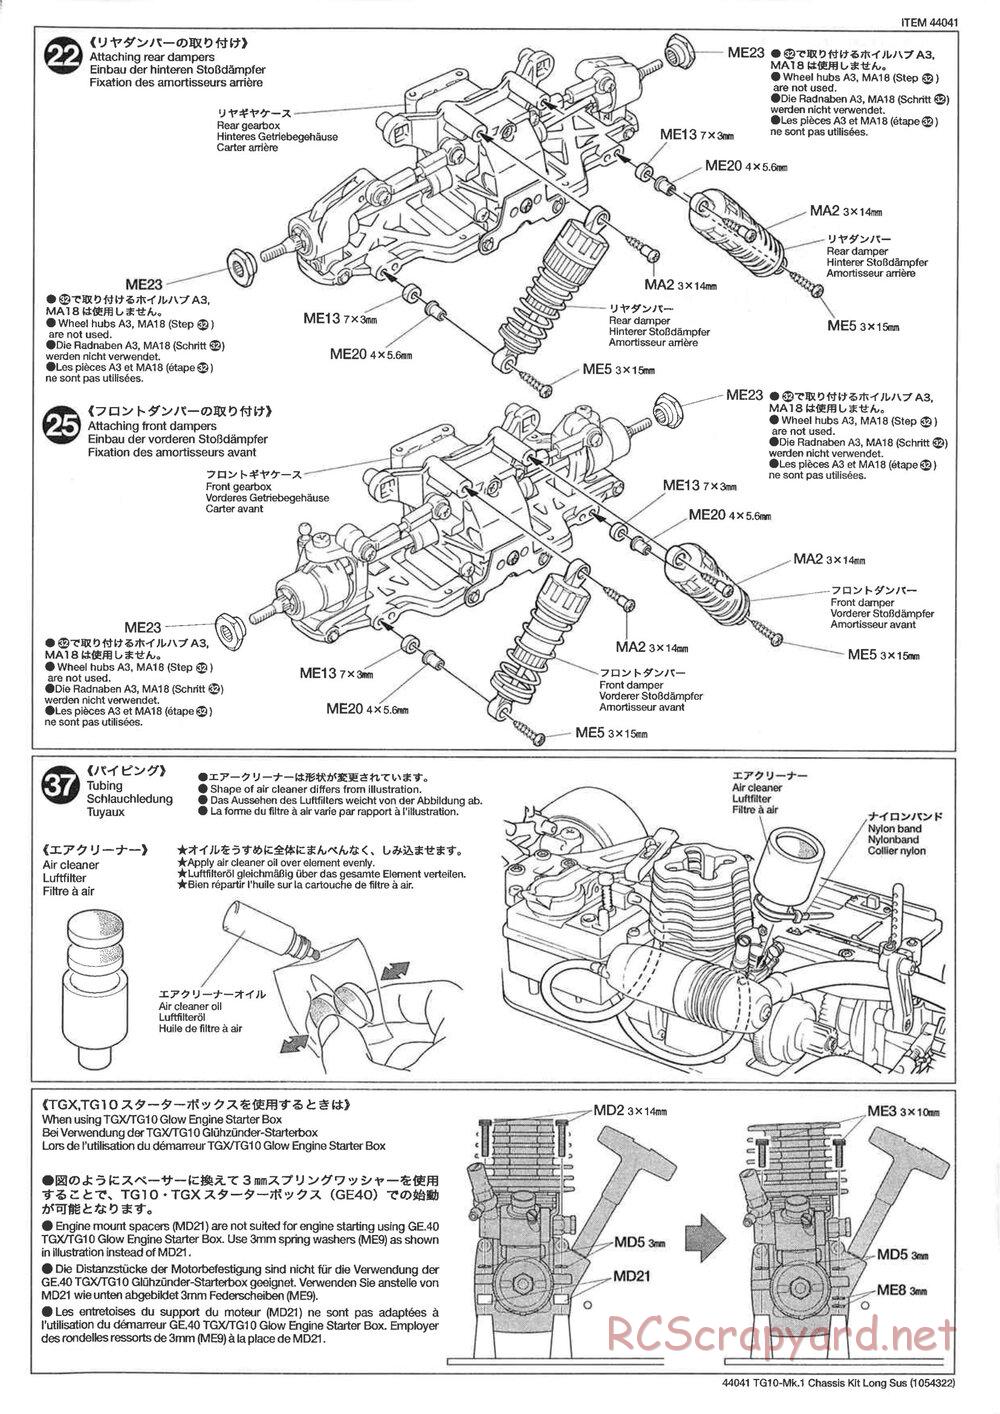 Tamiya - TG10 Mk.1 Long Suspension Chassis Chassis - Manual - Page 3